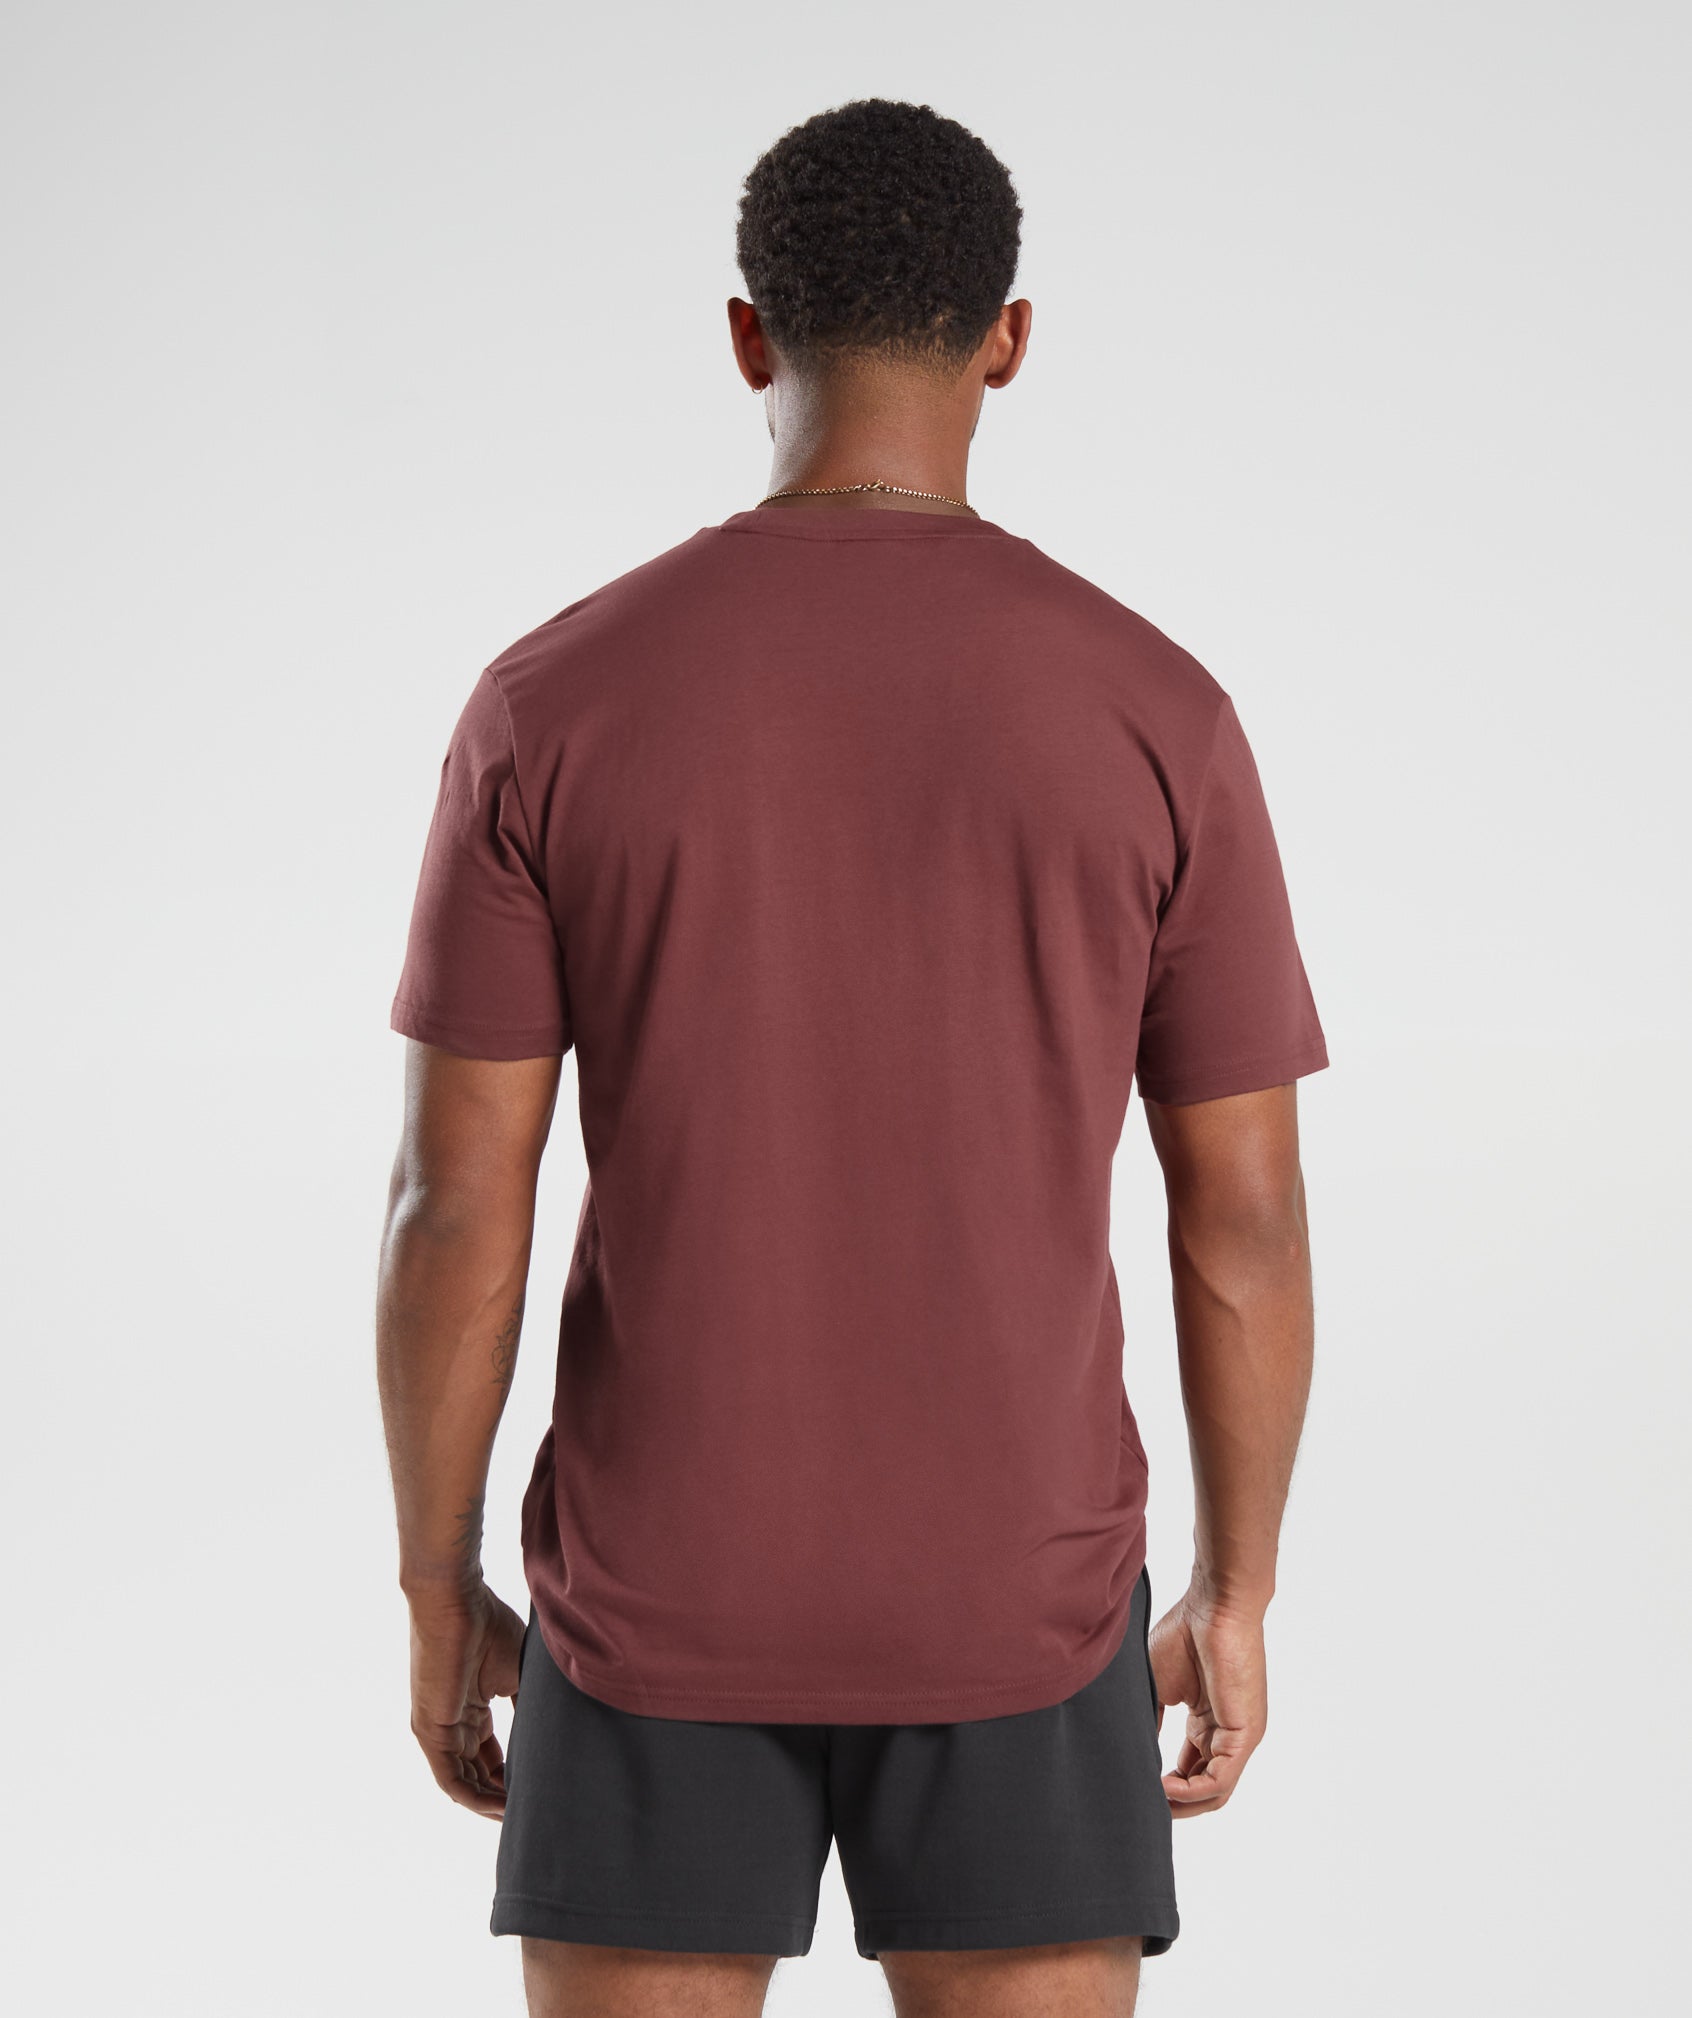 Gymshark Crest T-Shirt - Washed Burgundy